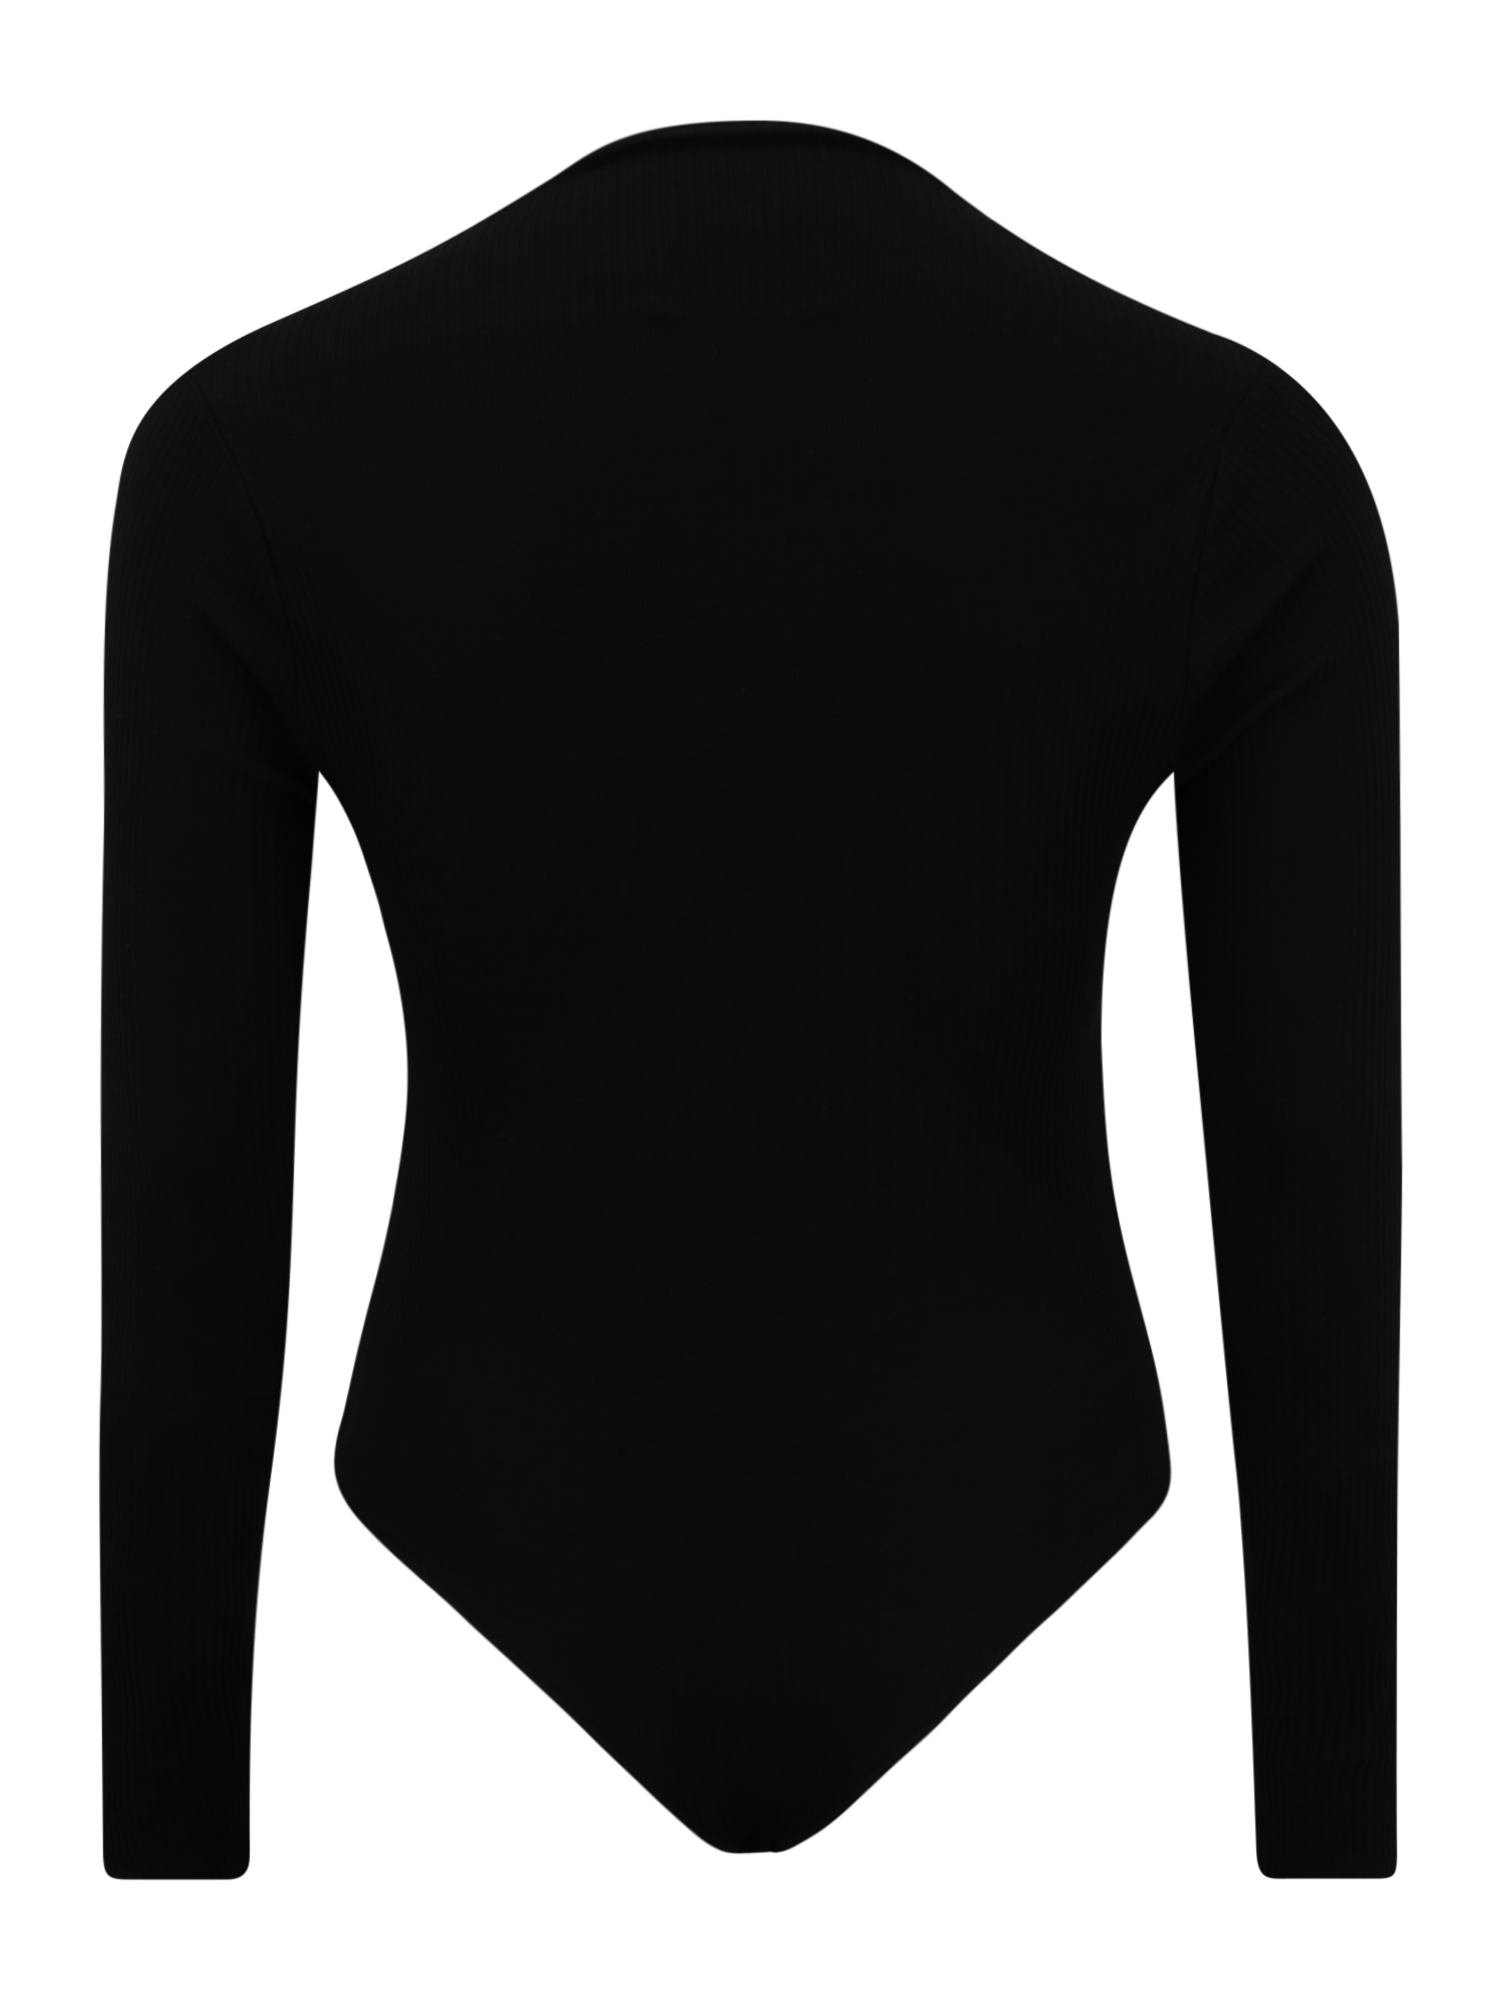 Odzież Kobiety NU-IN Koszula body w kolorze Czarnym 